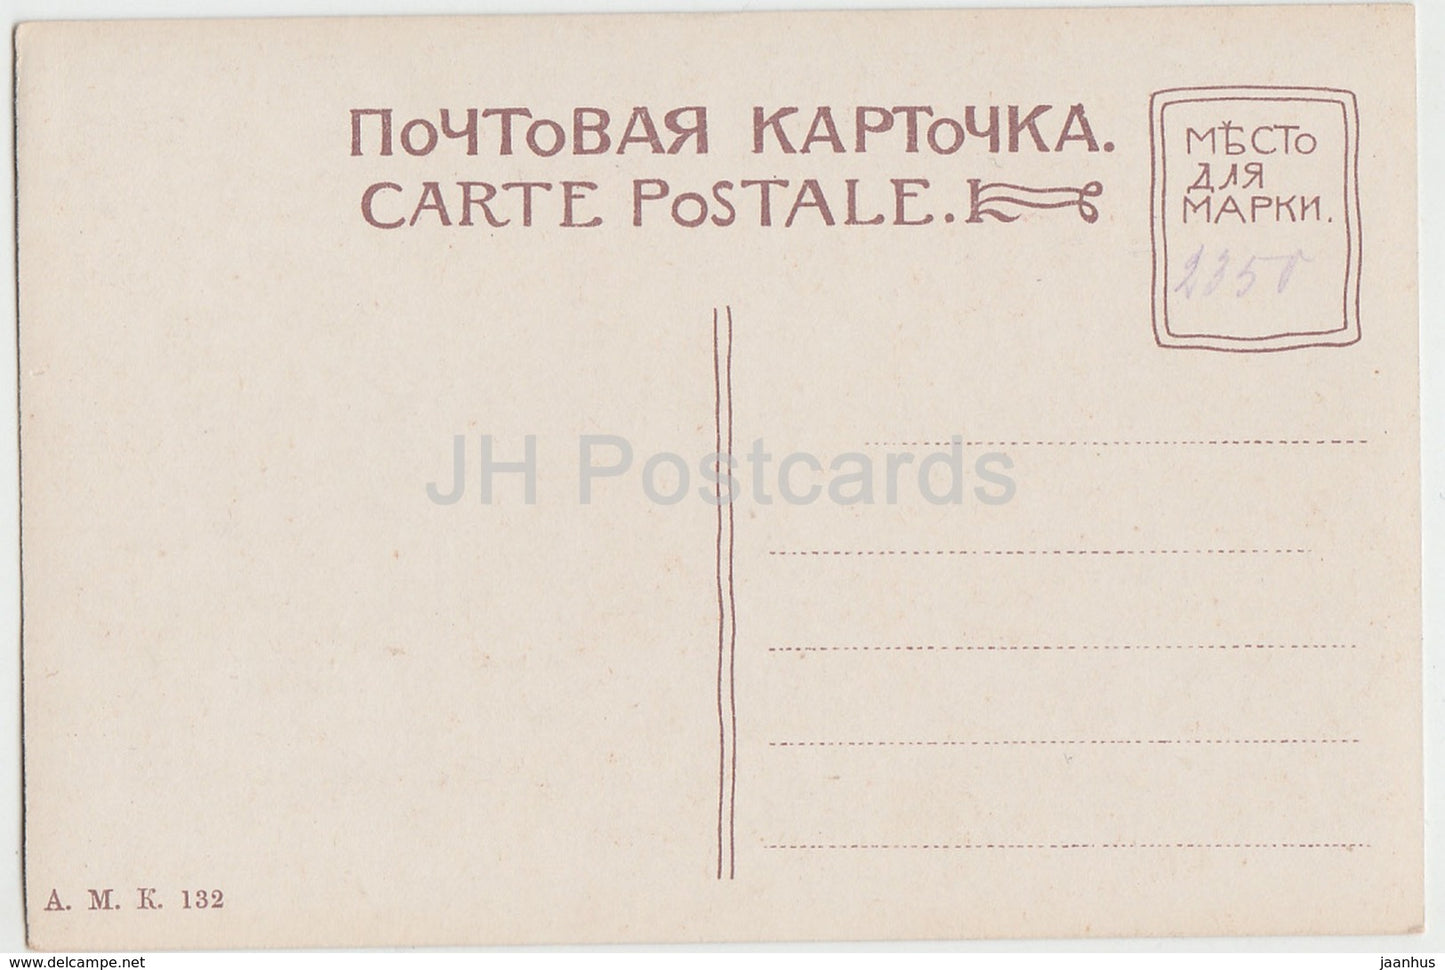 Saint-Pétersbourg - Saint-Pétersbourg - Gare de Ligovo - 132 - carte postale ancienne - Russie impériale - inutilisée